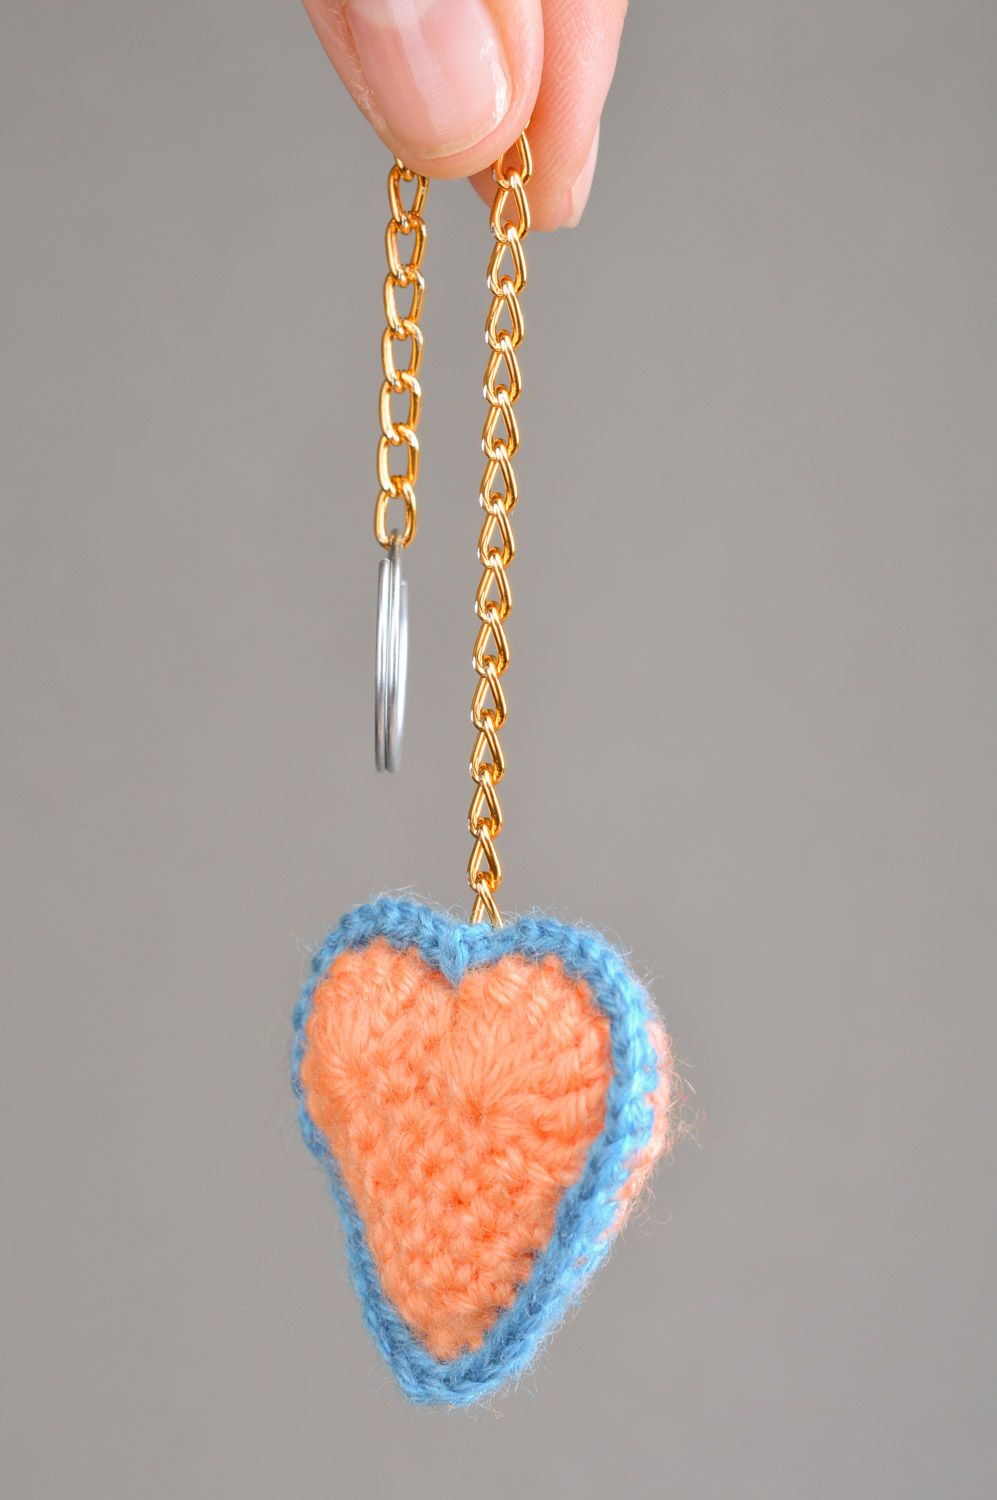 Персиковый мягкий брелок для ключей вязаный крючком из полушерсти ручной работы фото 3